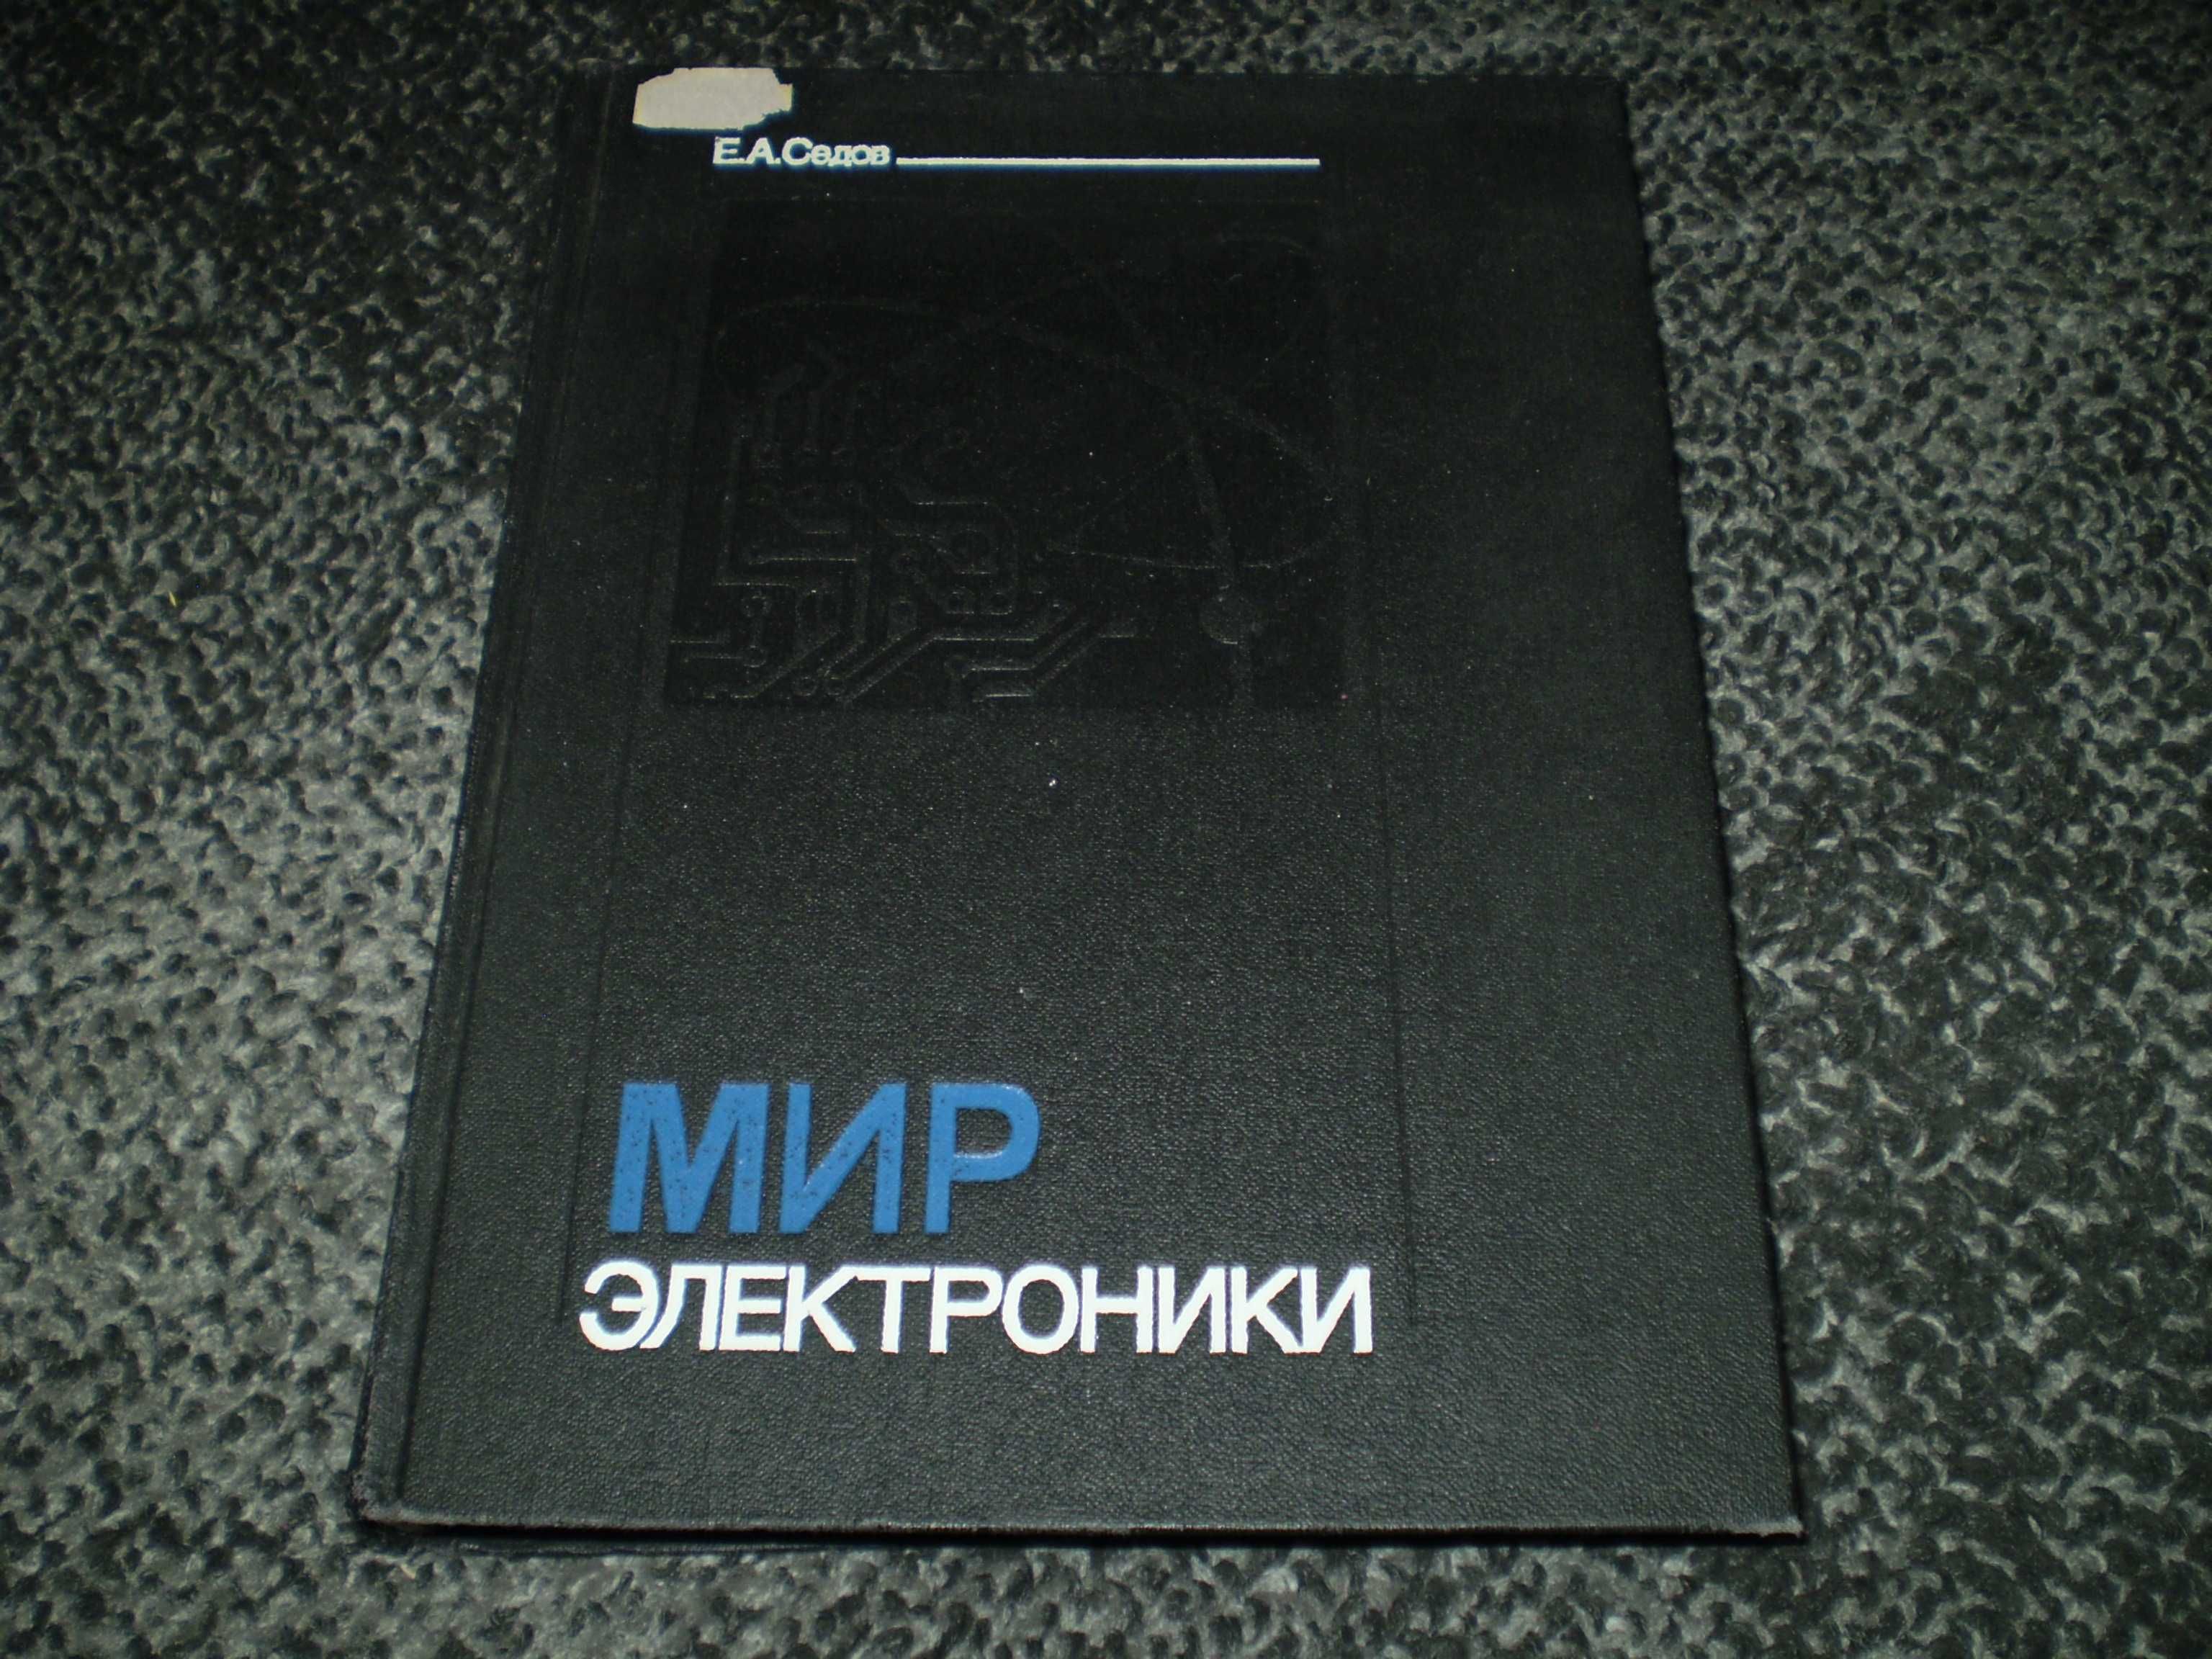 Е.Седов. Мир электроники. Книга первая. Серия:Эврика. 1990г